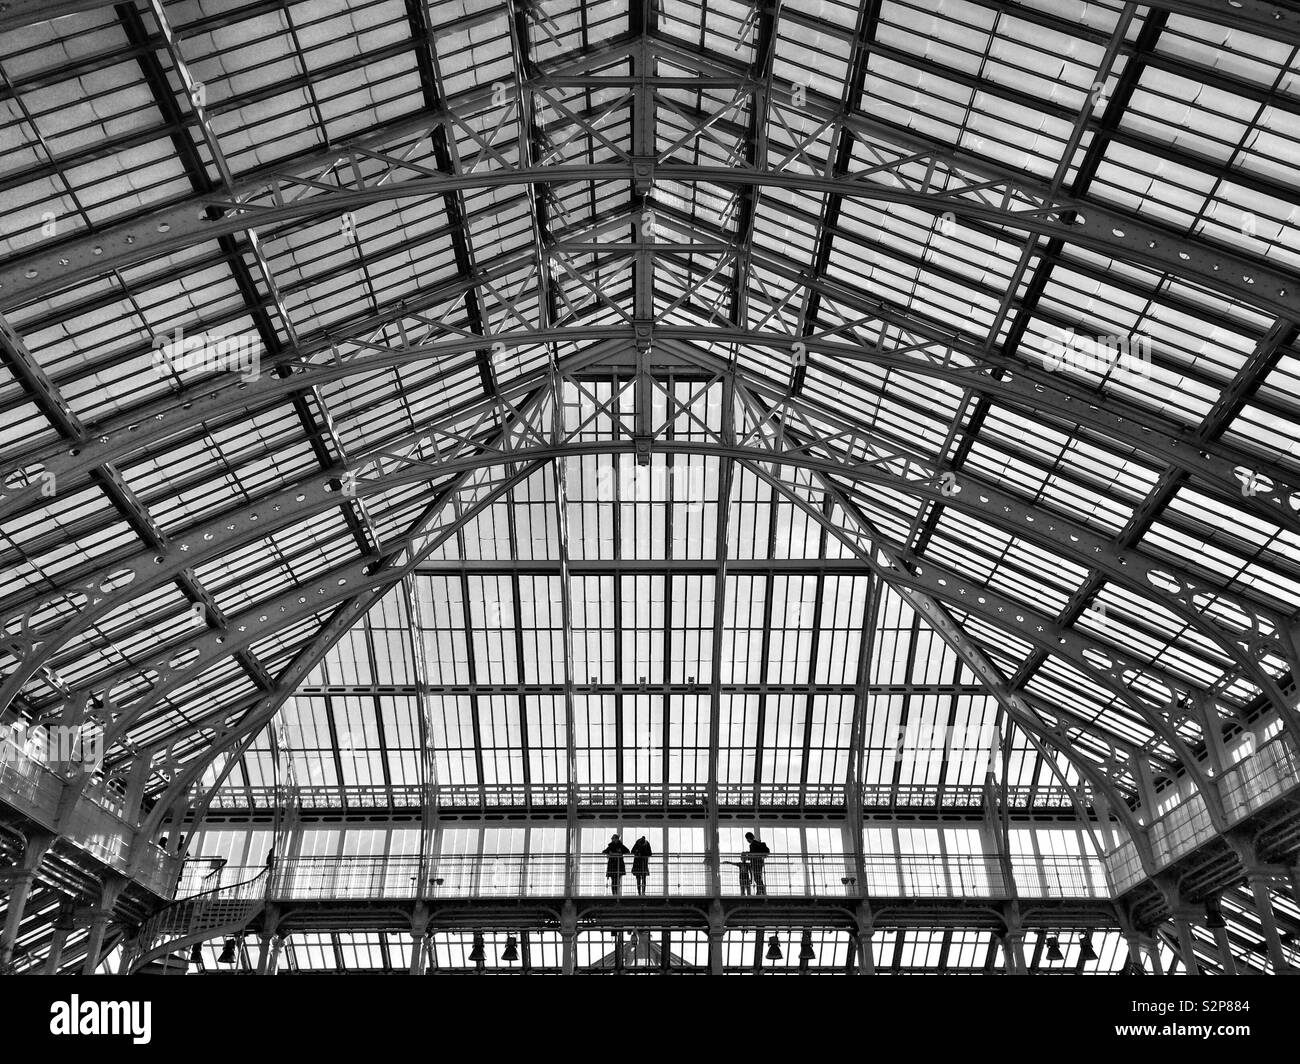 Le toit en verre de la Chambre dans les jardins de Kew, Angleterre Banque D'Images